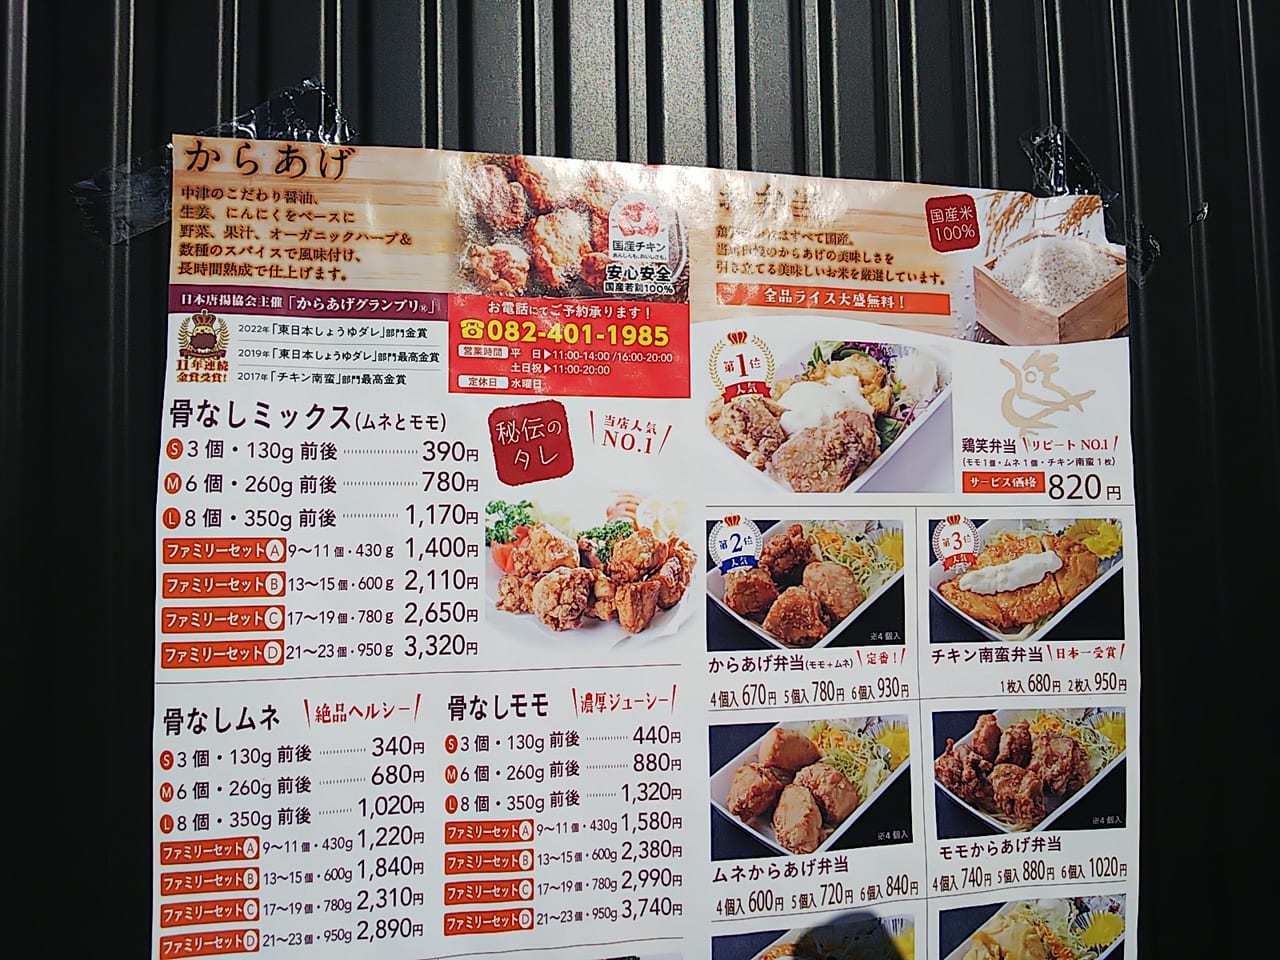 からあげ専門店鶏笑（とりしょう）が東広島市西条上市町に12月16日オープン